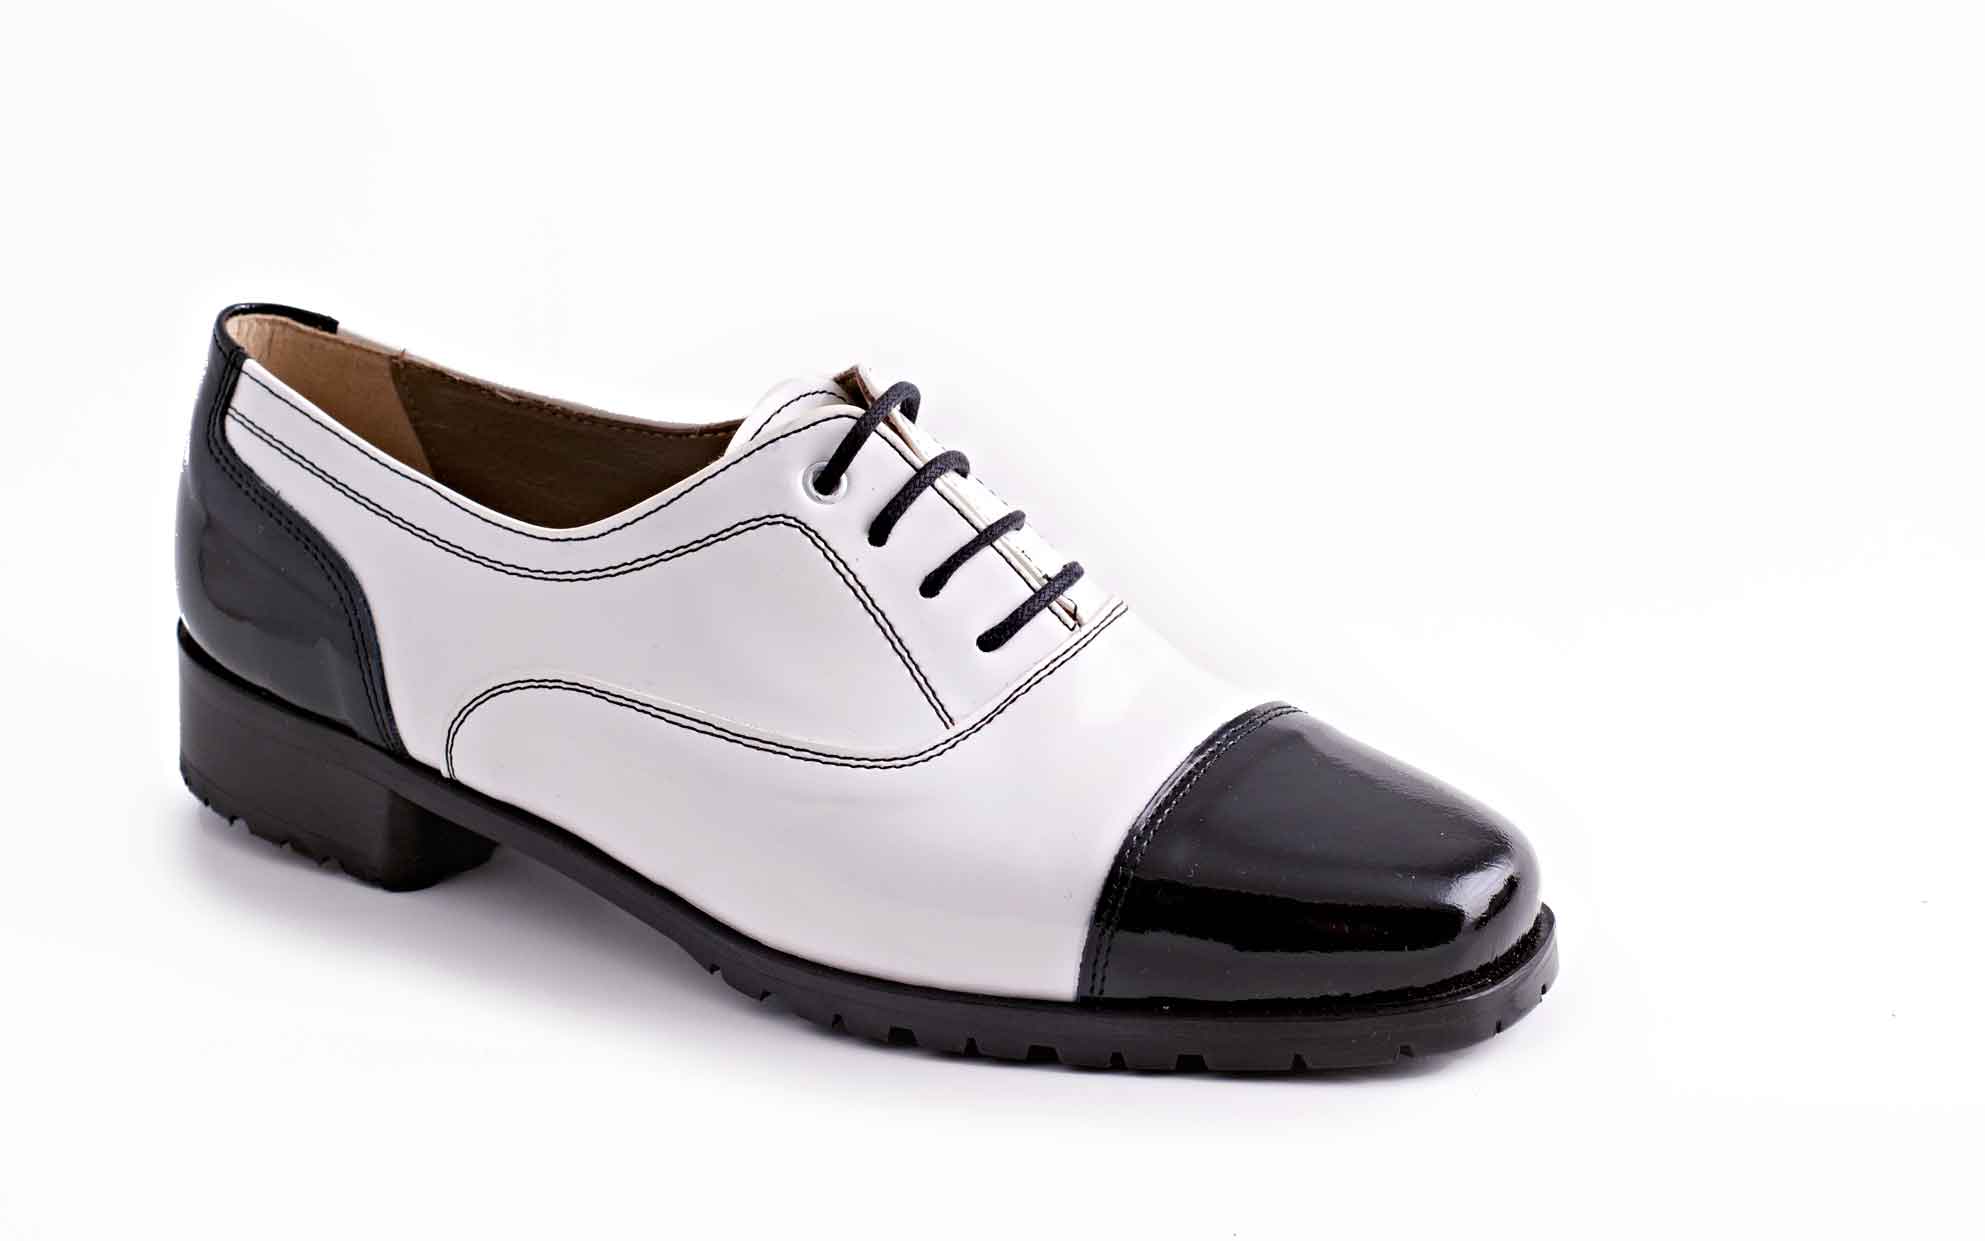 Zapato Chrarlí, fabricado en charol negro y blanco.